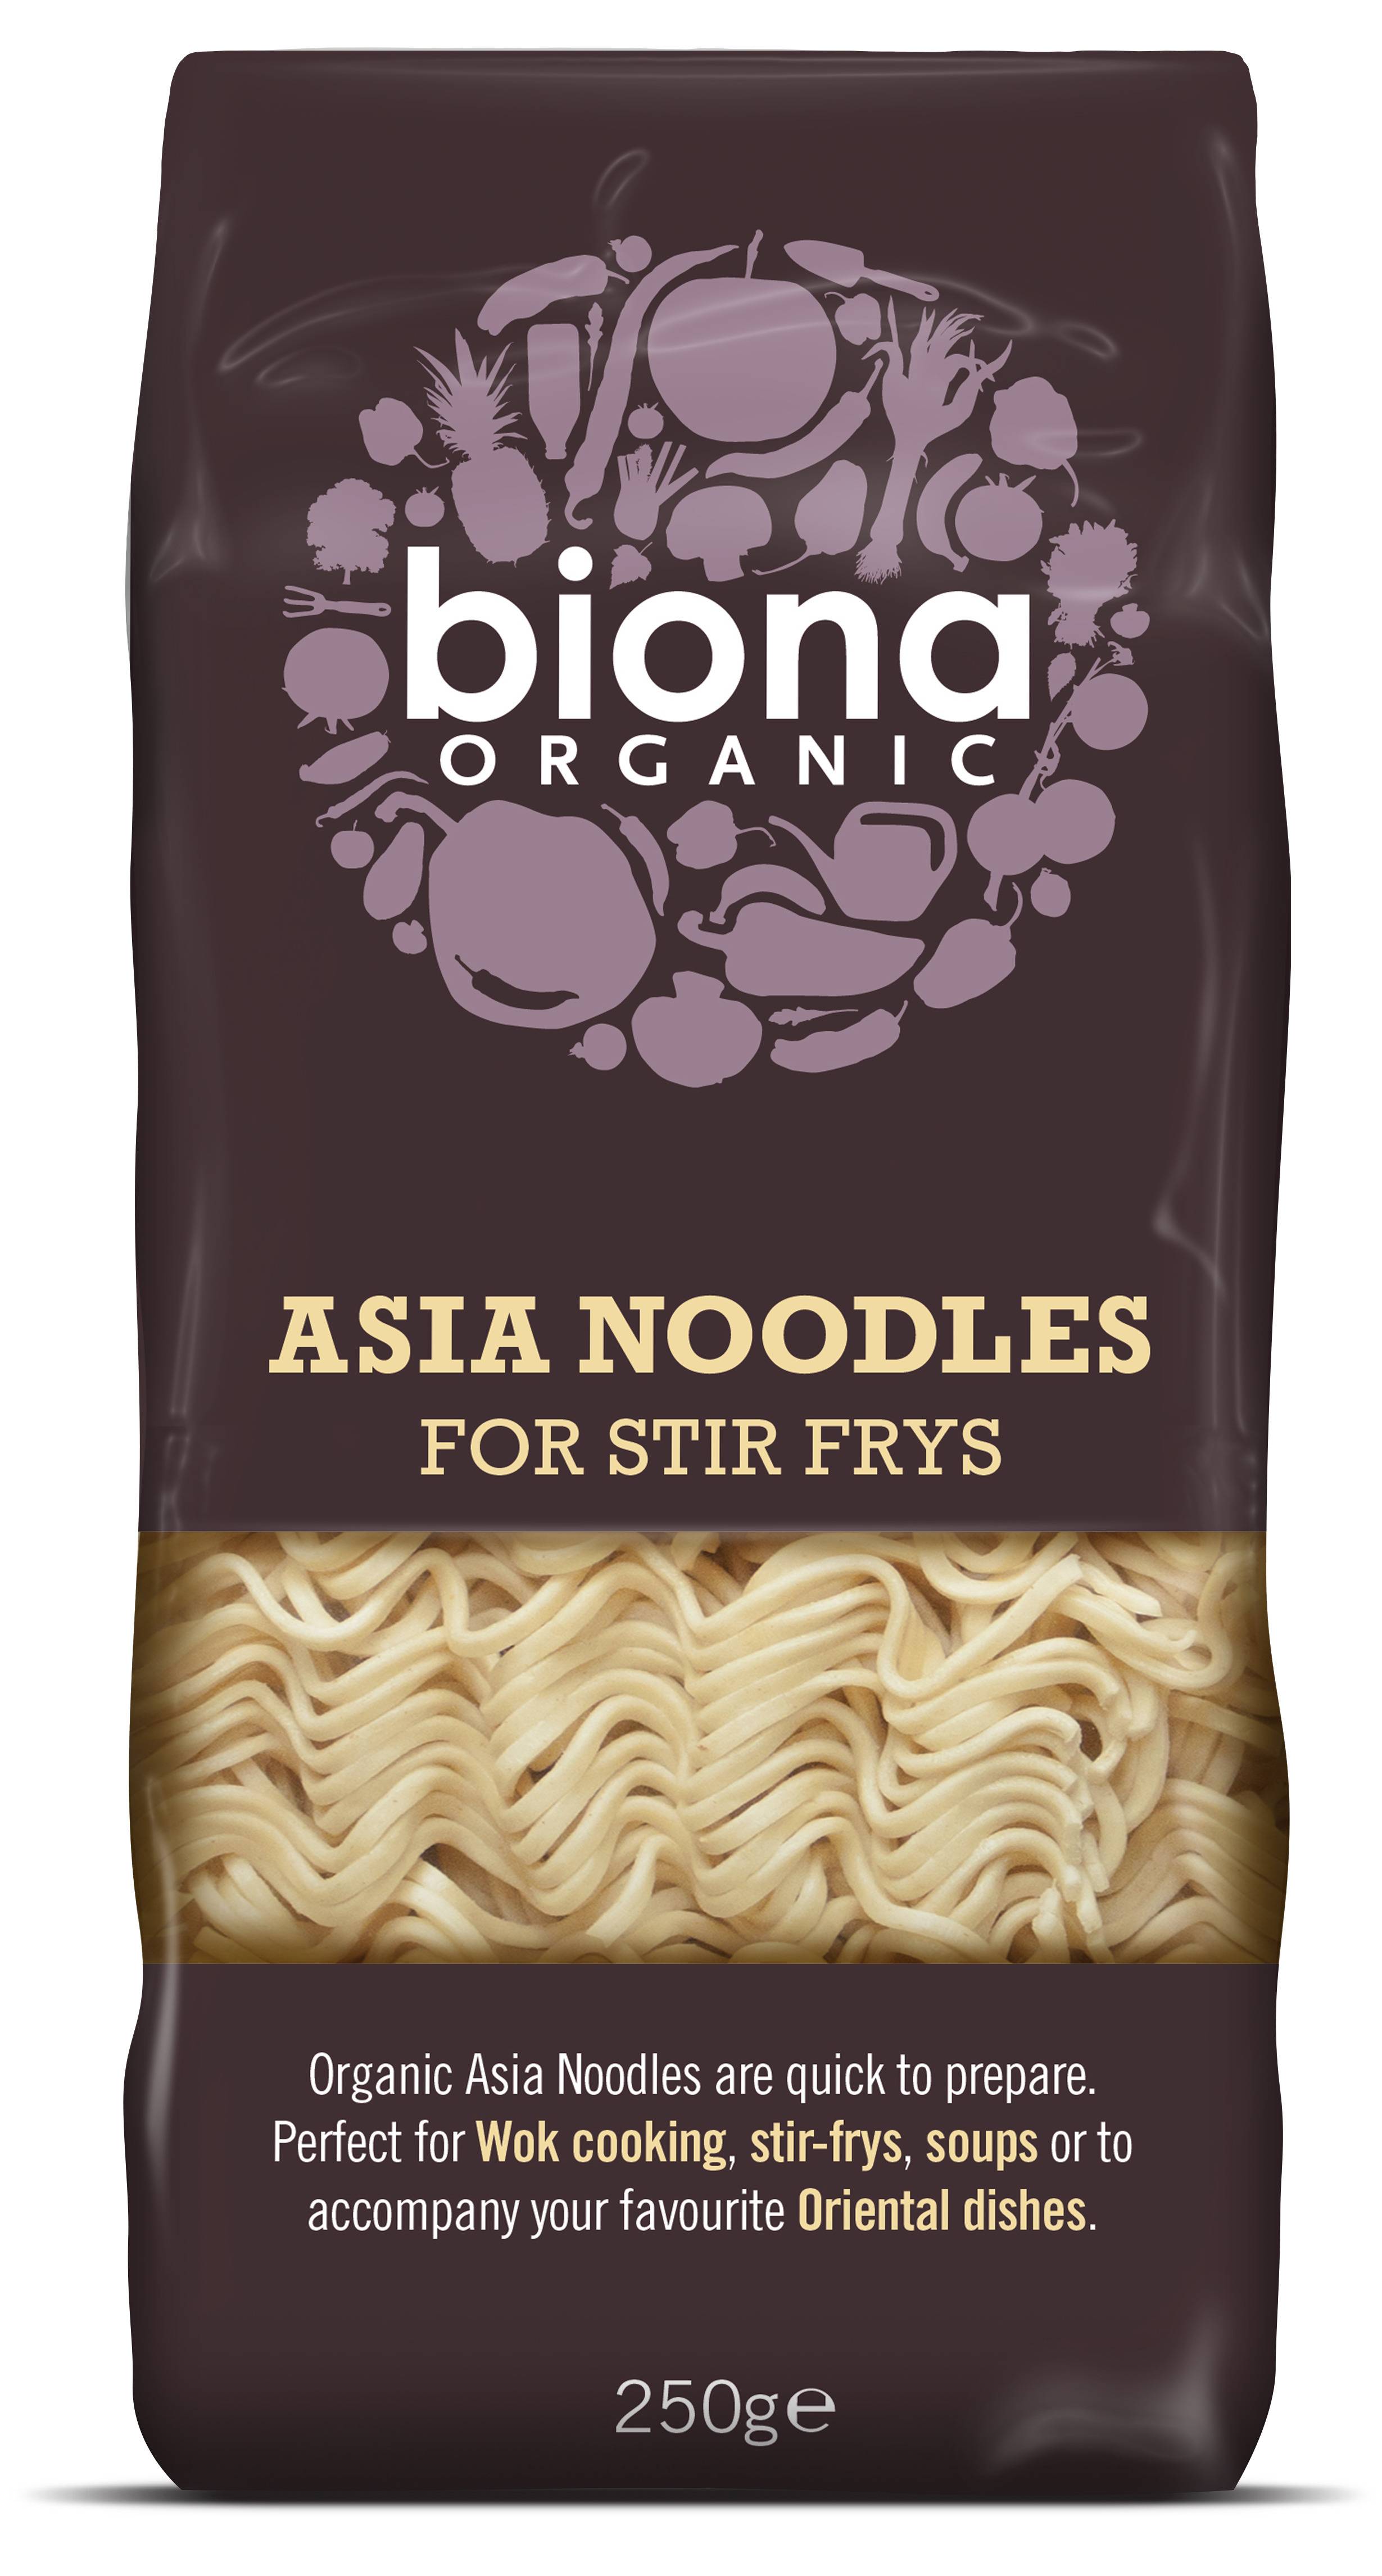 Asia noodles pentru stir fry, eco-bio, 250g - biona